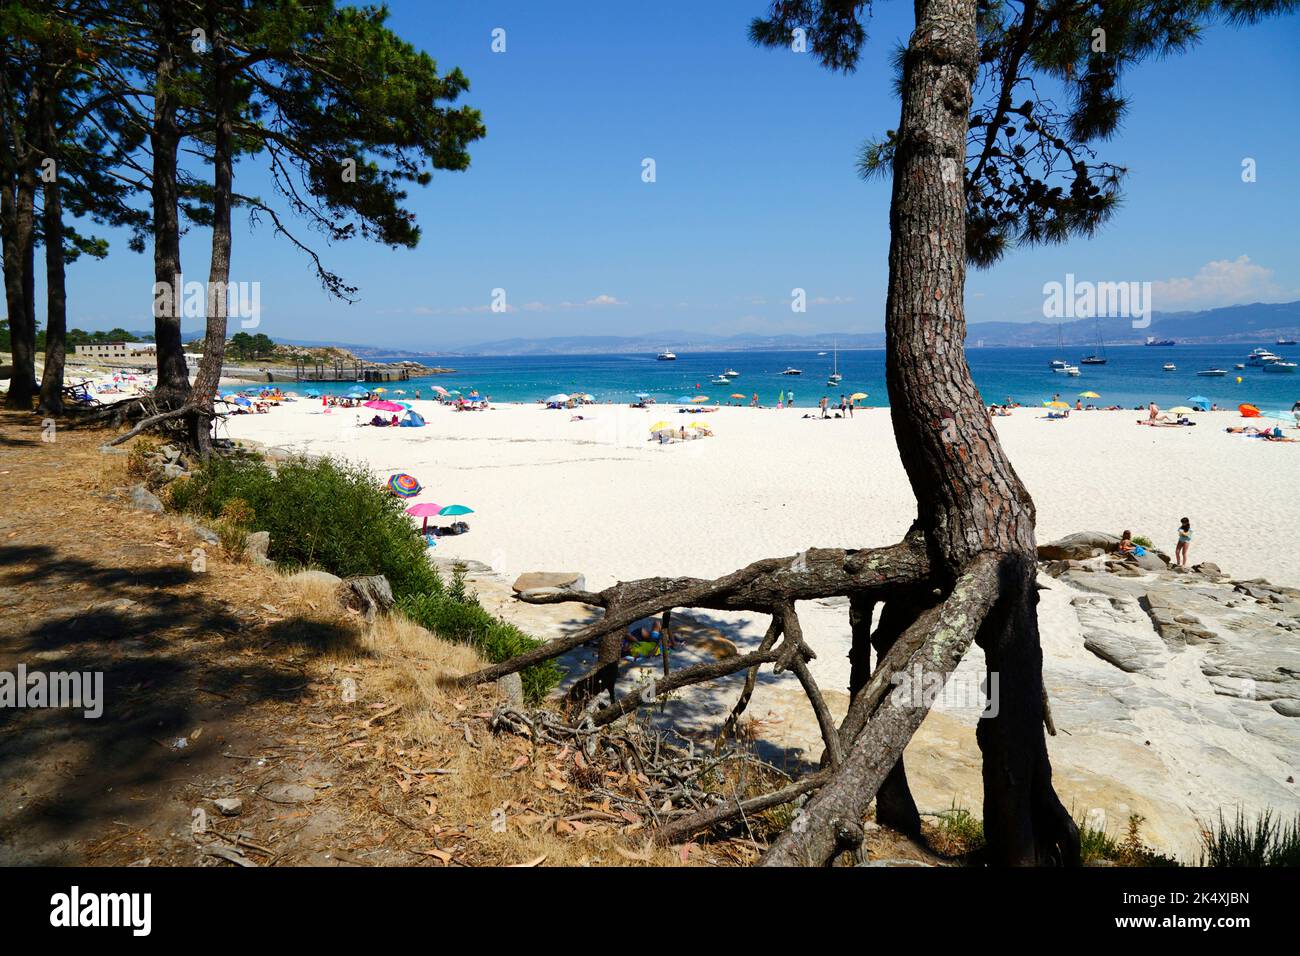 Pinien mit exponierten Wurzeln und Touristen am berühmten Strand Playa de Rodas, Cies-Inseln, Galicien, Spanien. Stockfoto